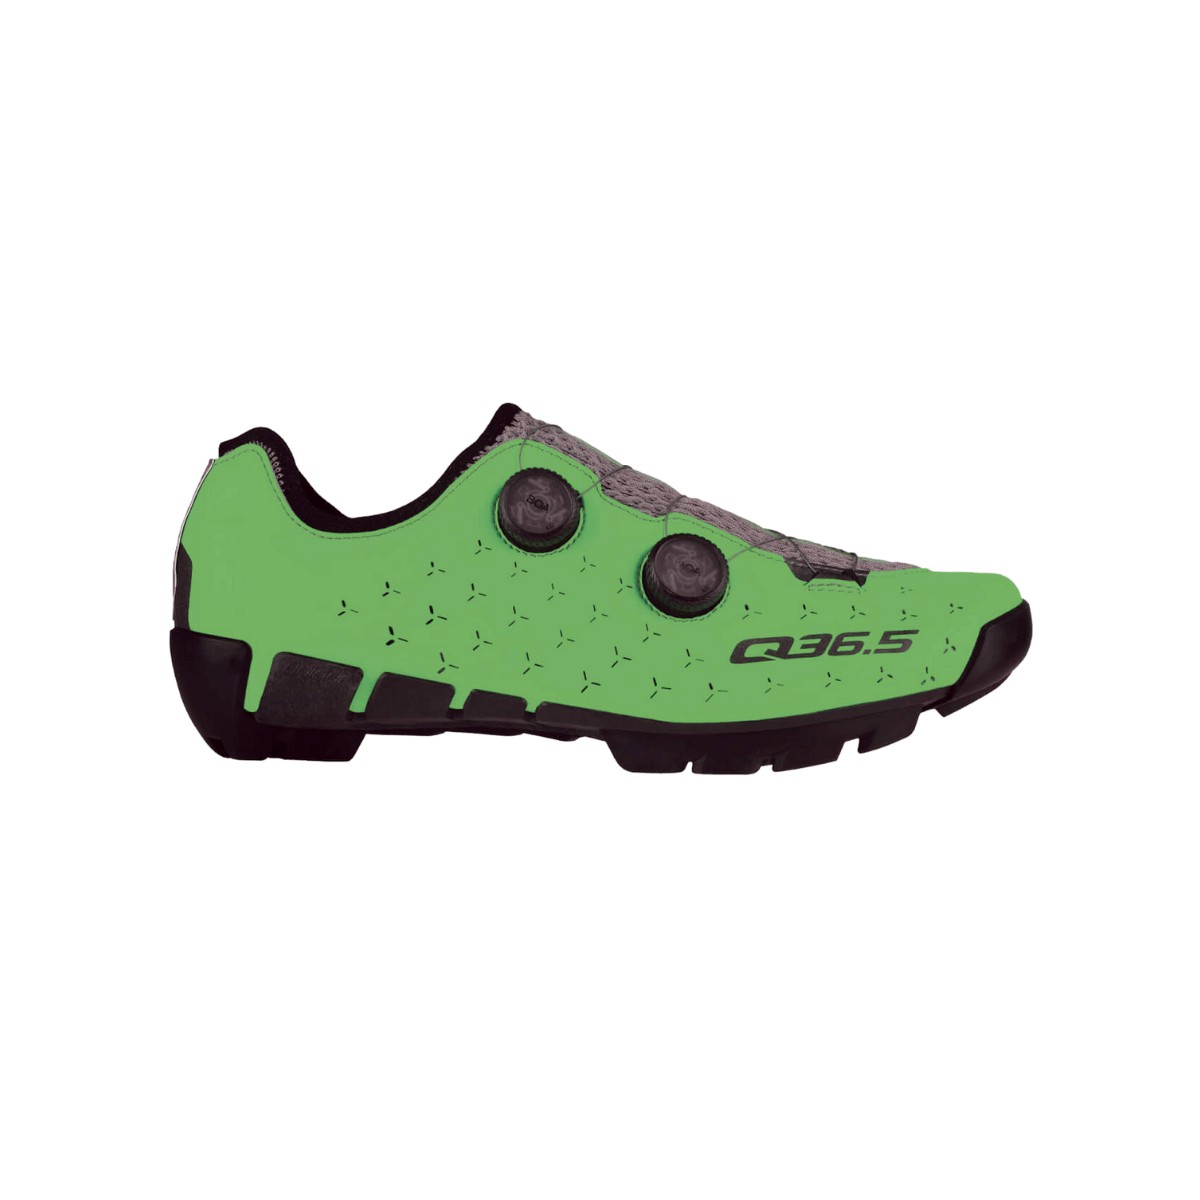 Q36.5 Unique Adventure Shoes Fluor Green, Size 42 - EUR